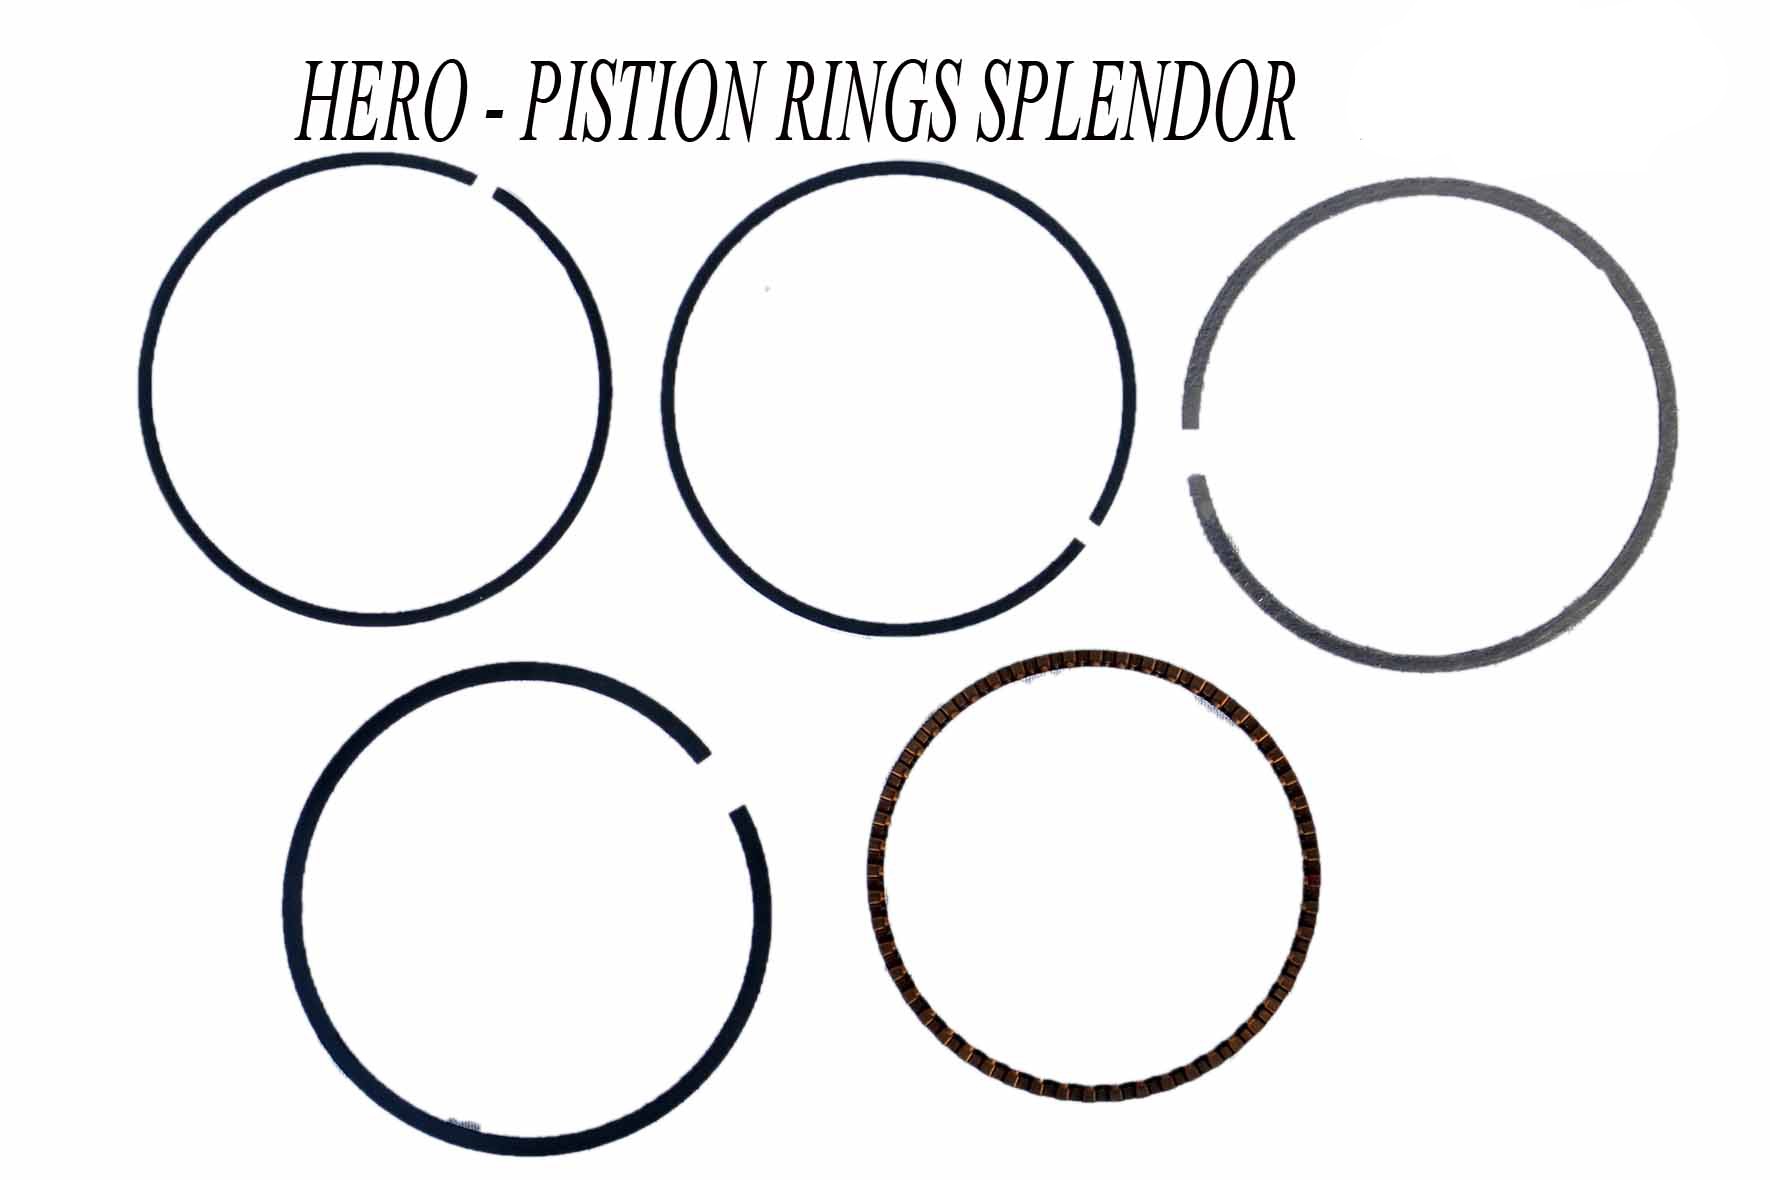 Honda NOS 550 Piston Ring Set Cb550k Cb550f 13011-374-000 for sale online |  eBay